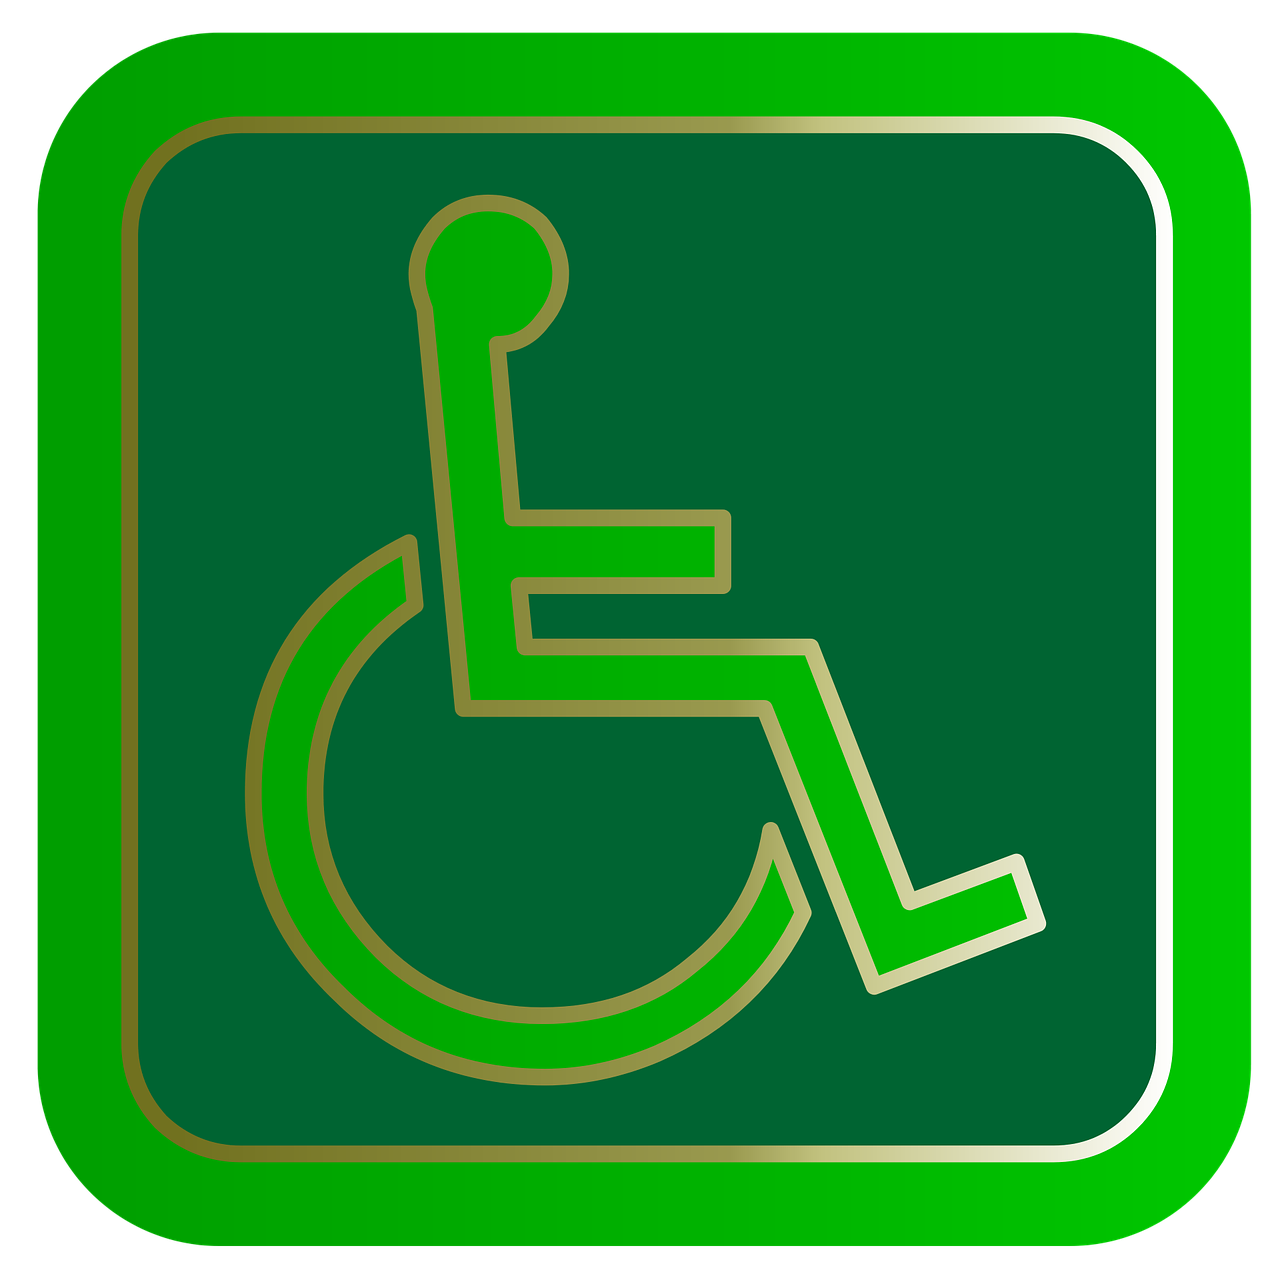 ROB-Rivierbuurt instelling gehandicaptenzorg verstandelijk gehandicapten beoordeling